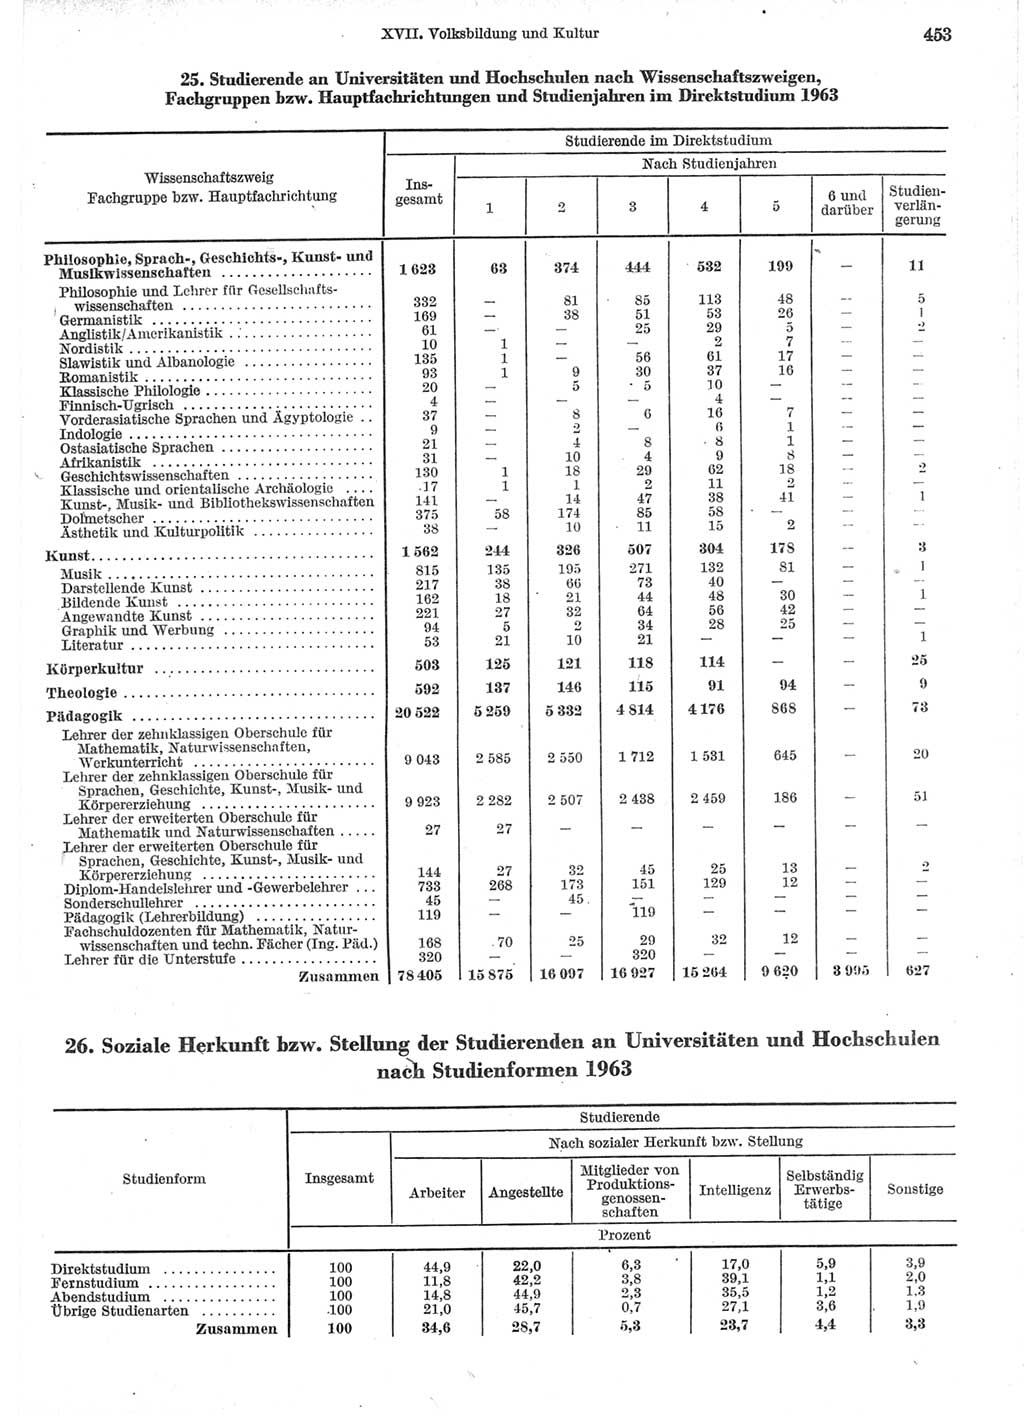 Statistisches Jahrbuch der Deutschen Demokratischen Republik (DDR) 1964, Seite 453 (Stat. Jb. DDR 1964, S. 453)